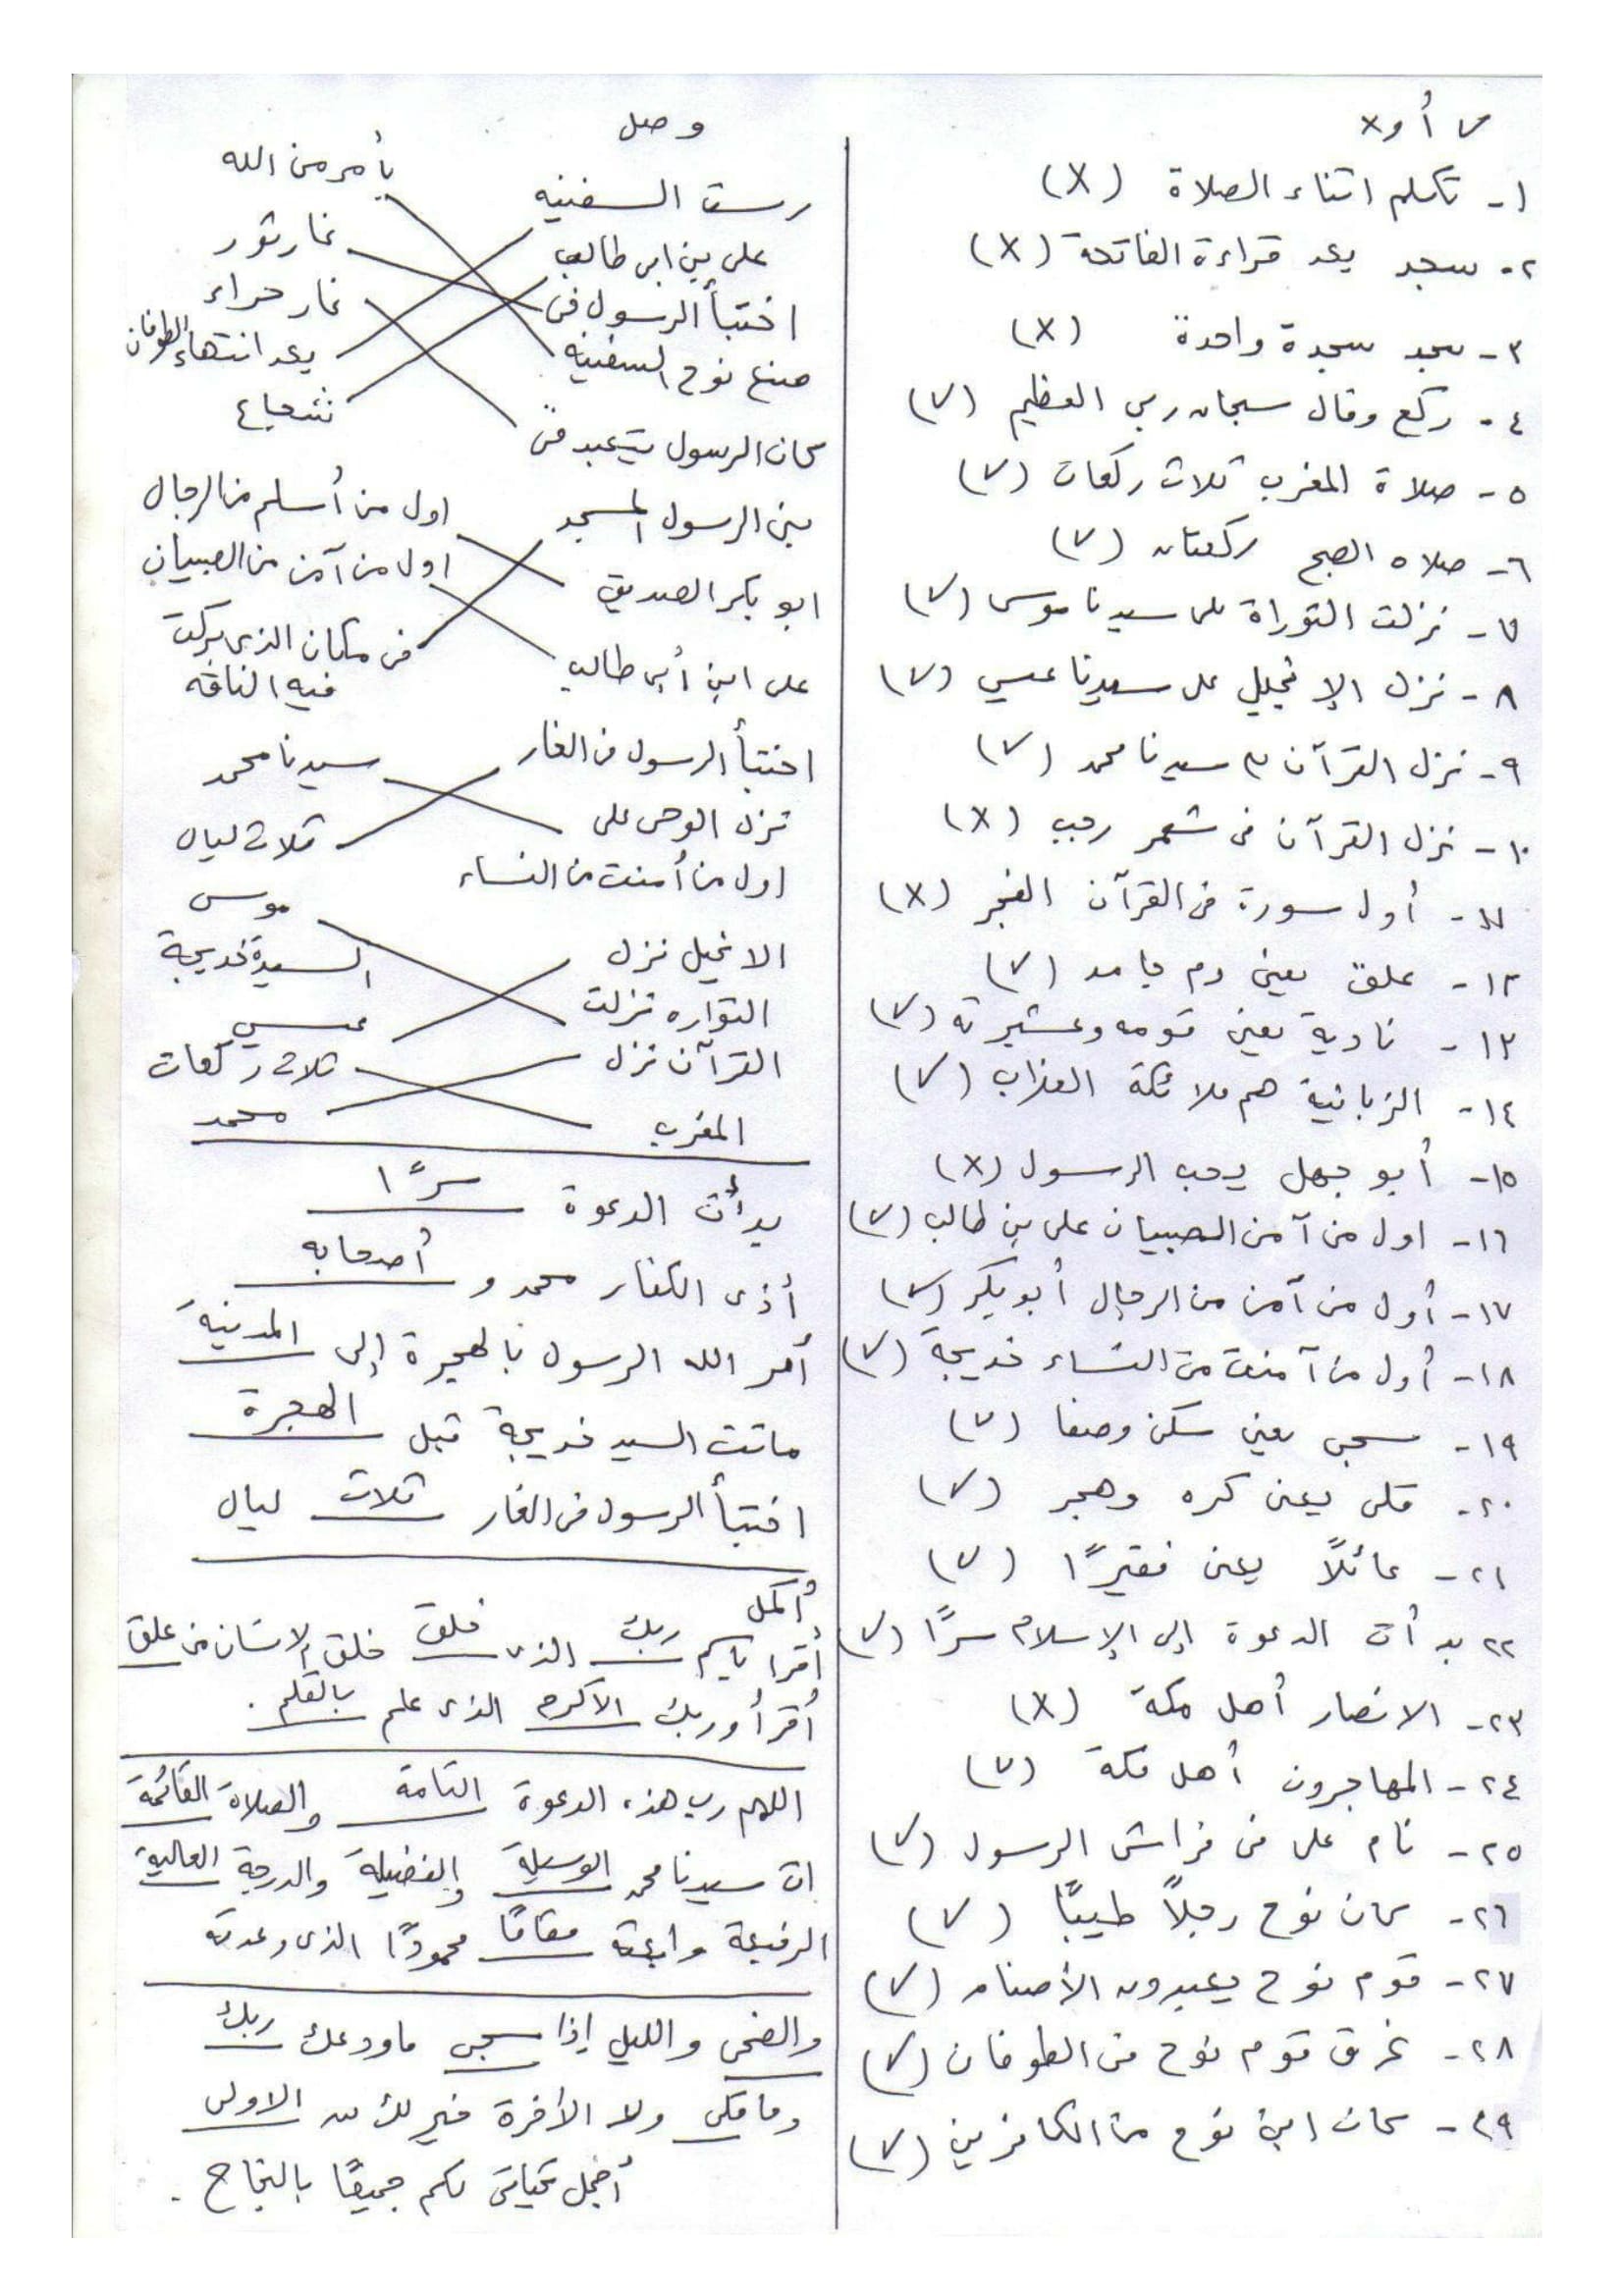 مراجعة ليلة الامتحان فى ورقة واحدة فى التربية الدينية الاسلامية للصف الثانى الابتدائى الترم الثانى